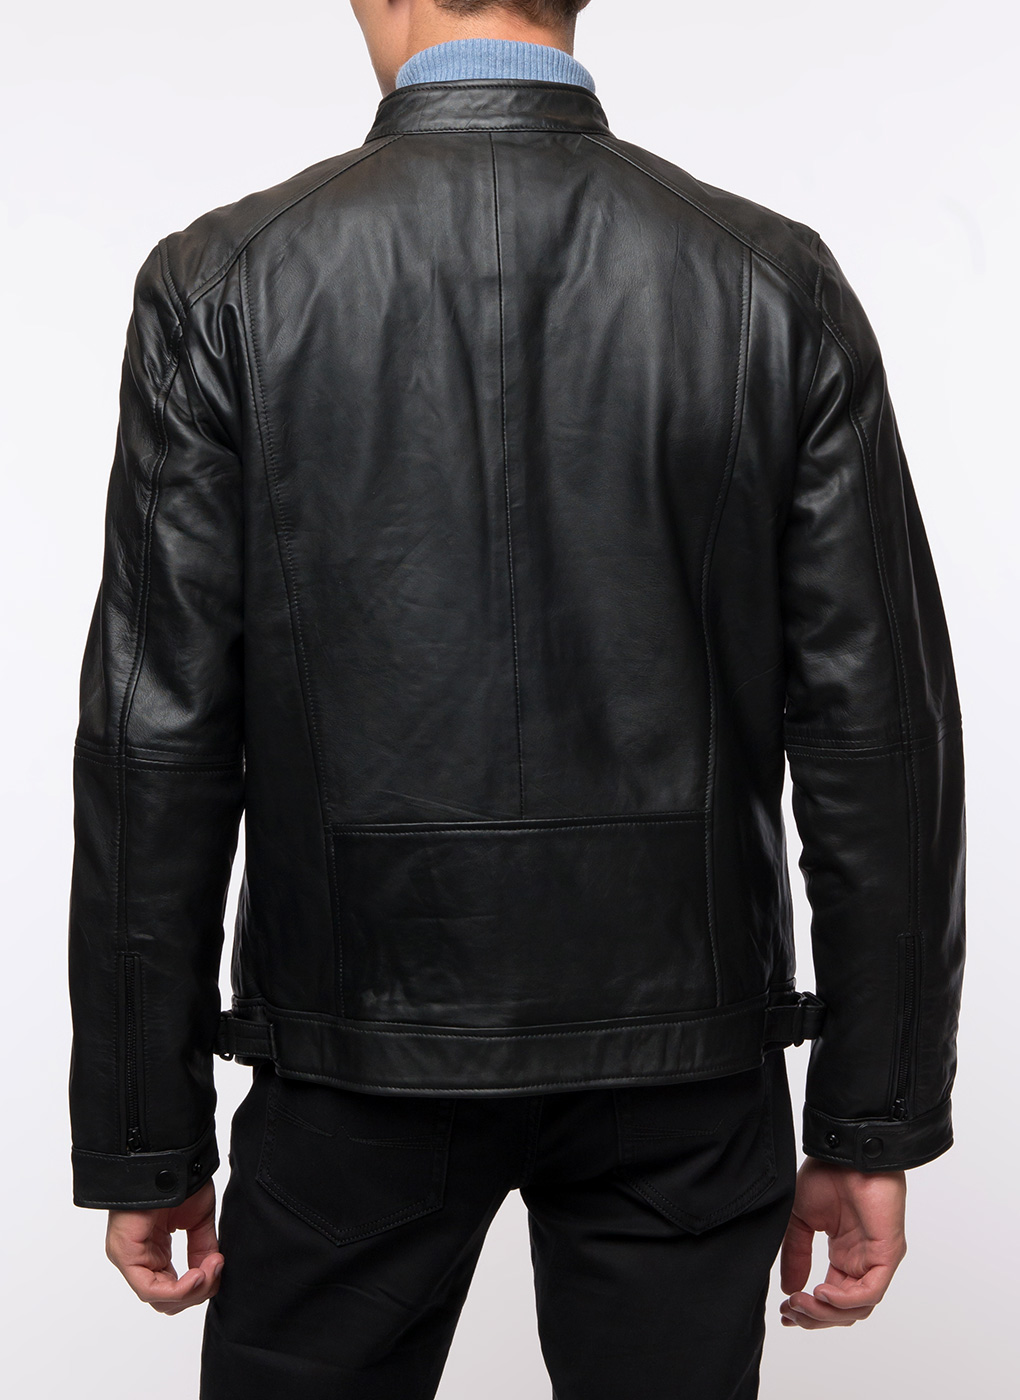 Кожаная куртка мужская Каляев 40630 черная 56 RU